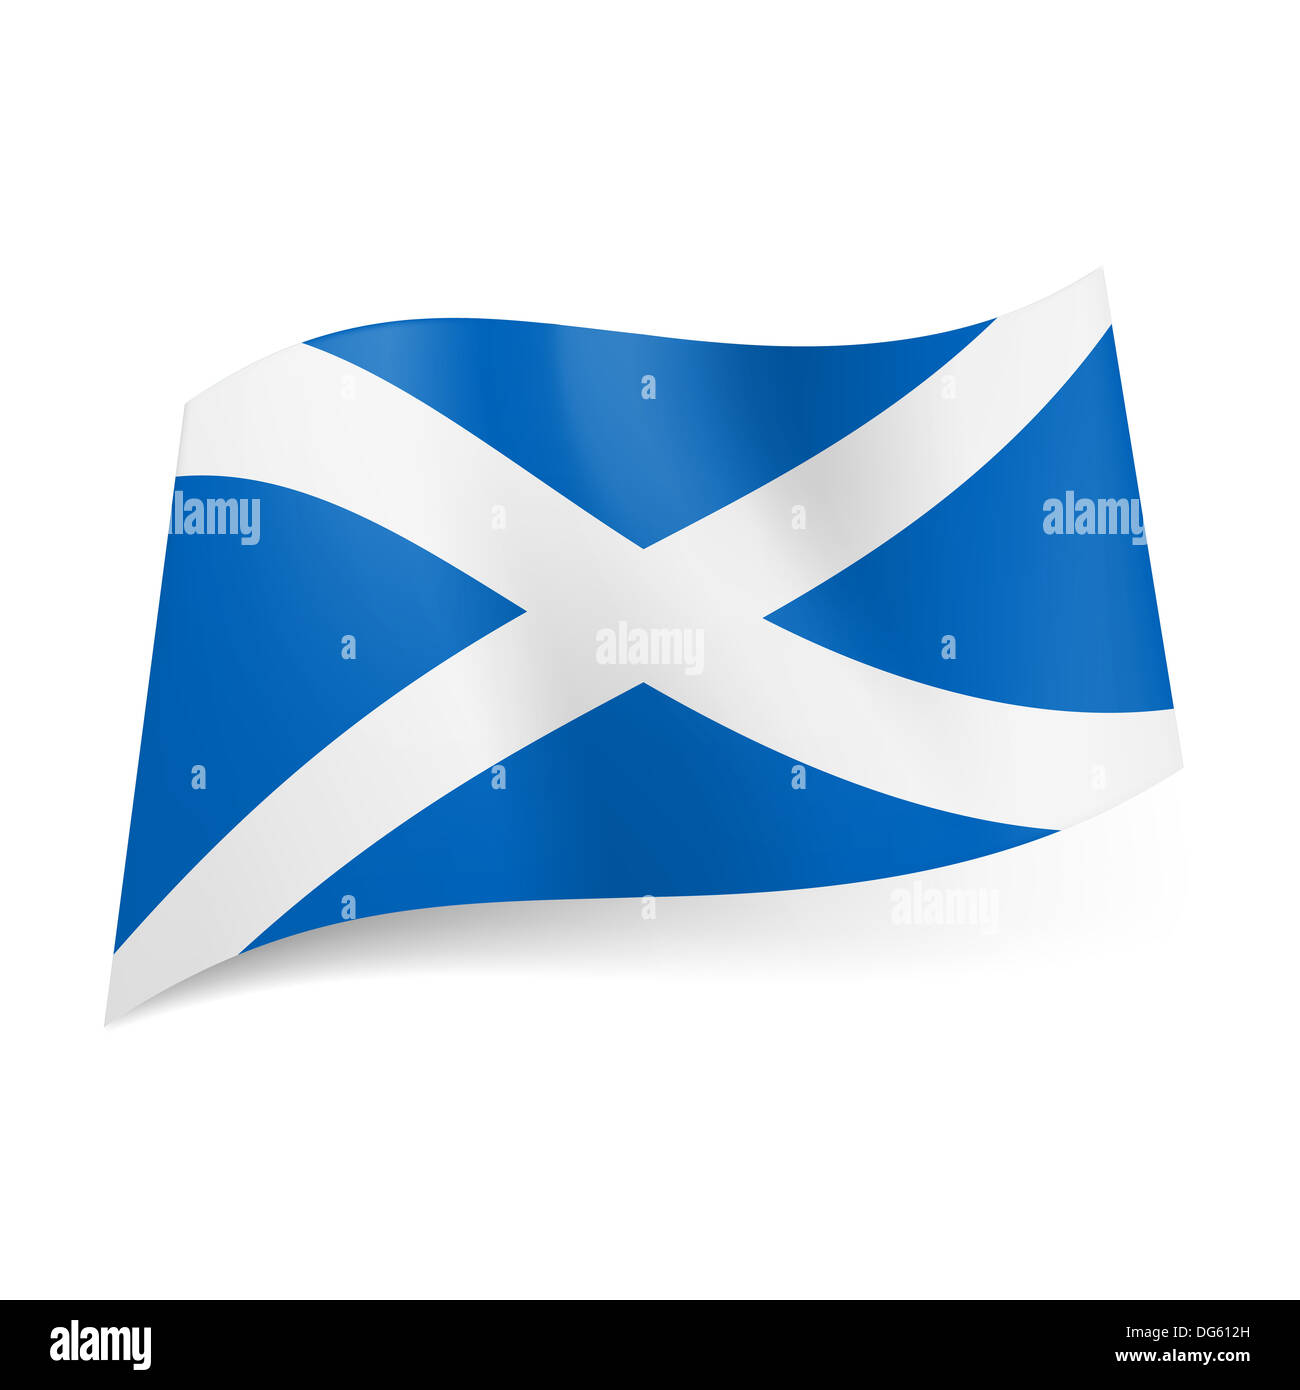 Flagge Von Schottland Weisses Kreuz Auf Blauem Hintergrund Stockfotografie Alamy